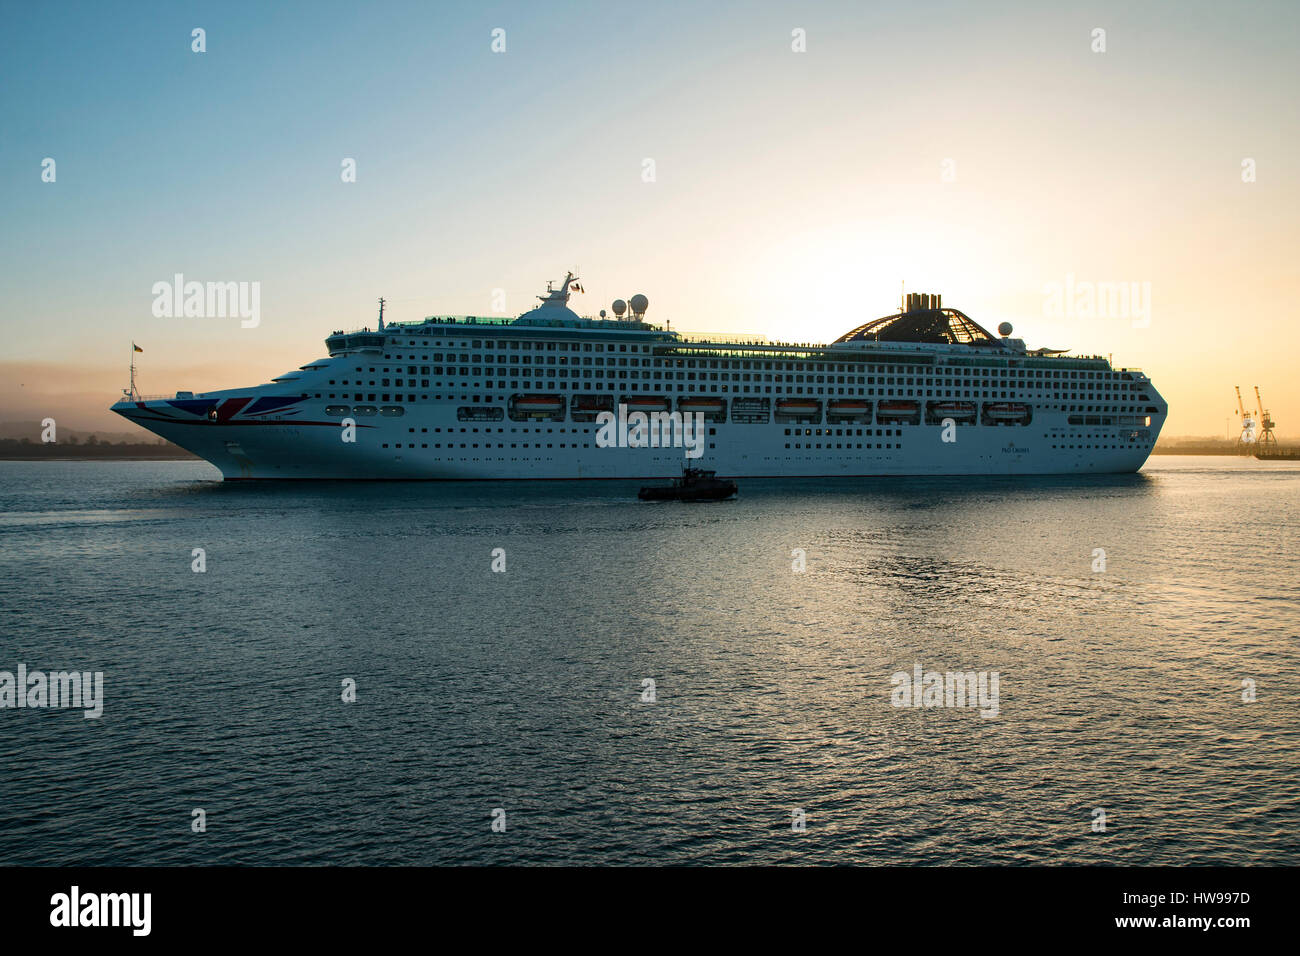 P & O Kreuzfahrt Schiff Oceana aus Southampton am 15. März 2017 kurz vor Sonnenuntergang auf dem Weg nach Lissabon. Stadtkai entnommen Stockfoto